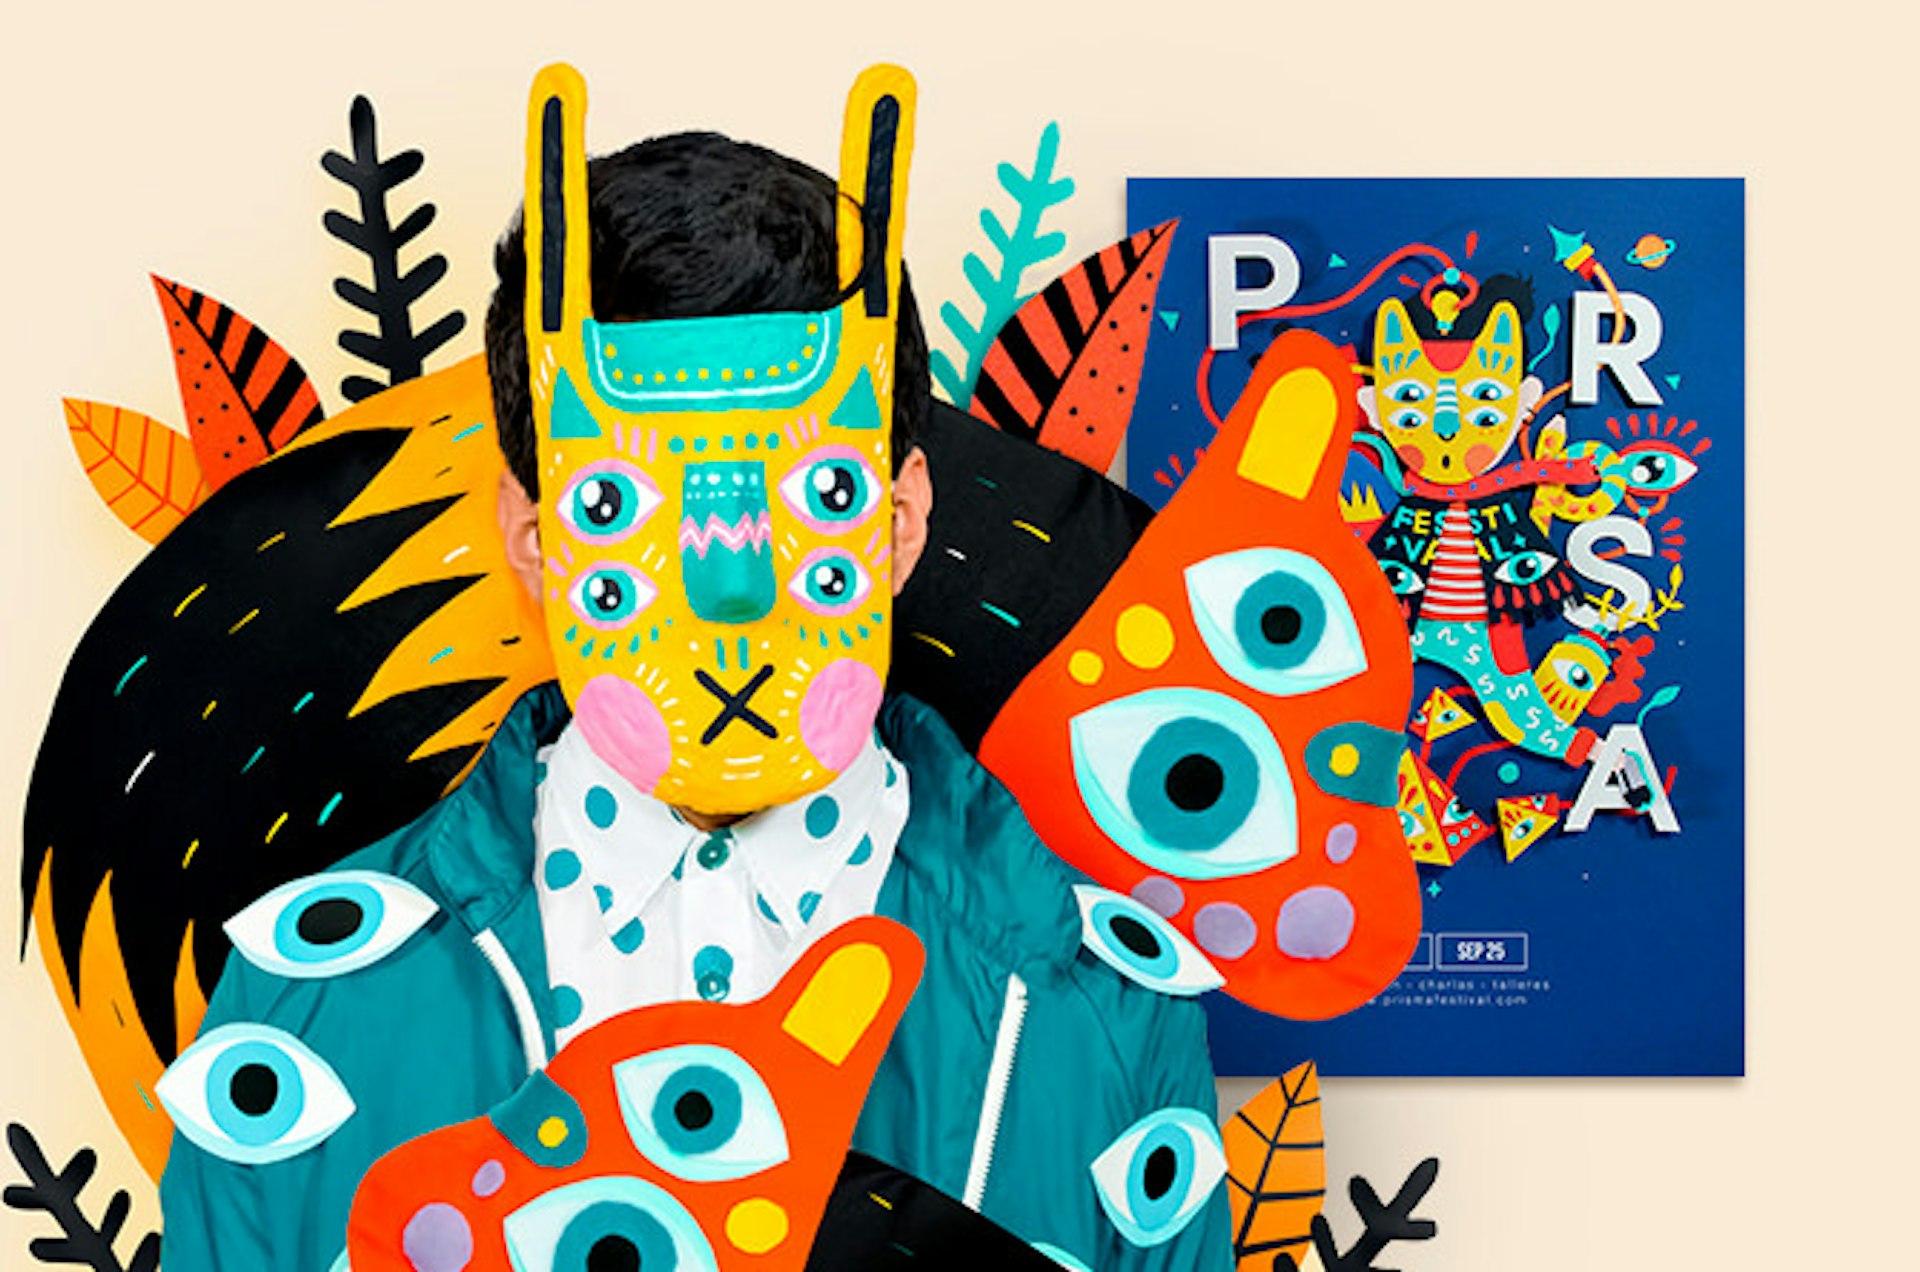 Ilustrando en Paper Craft: Crea un poster para un festival